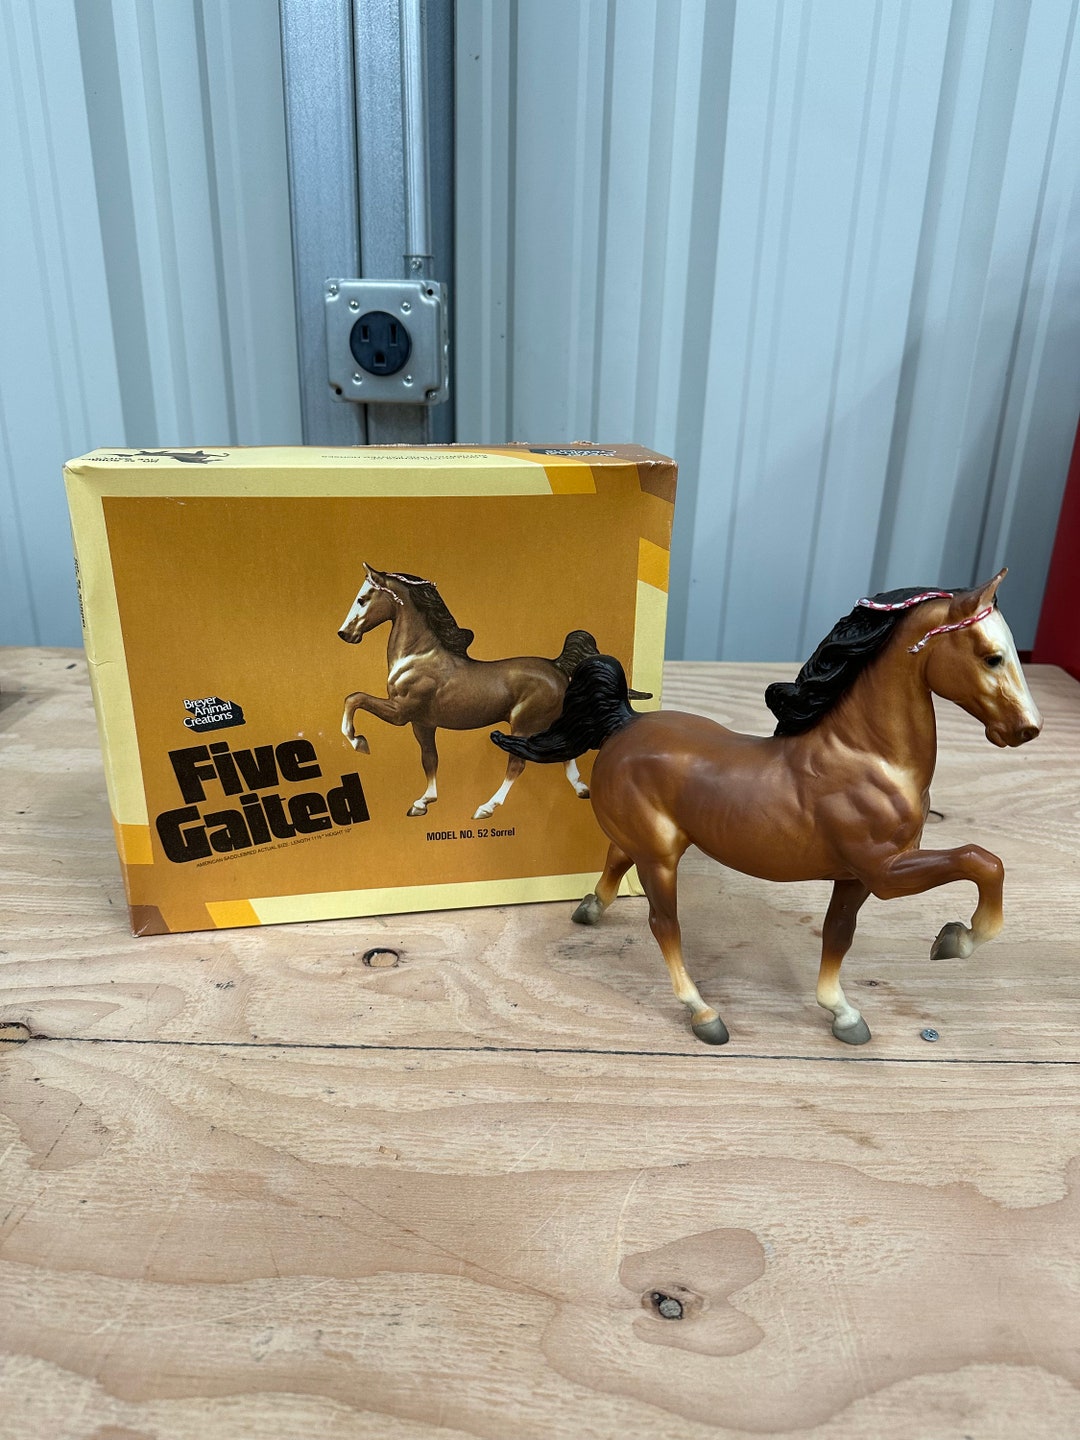 Vintage Breyer Plastic Horse Five Gaited Model No. 52 Sorrel - Etsy